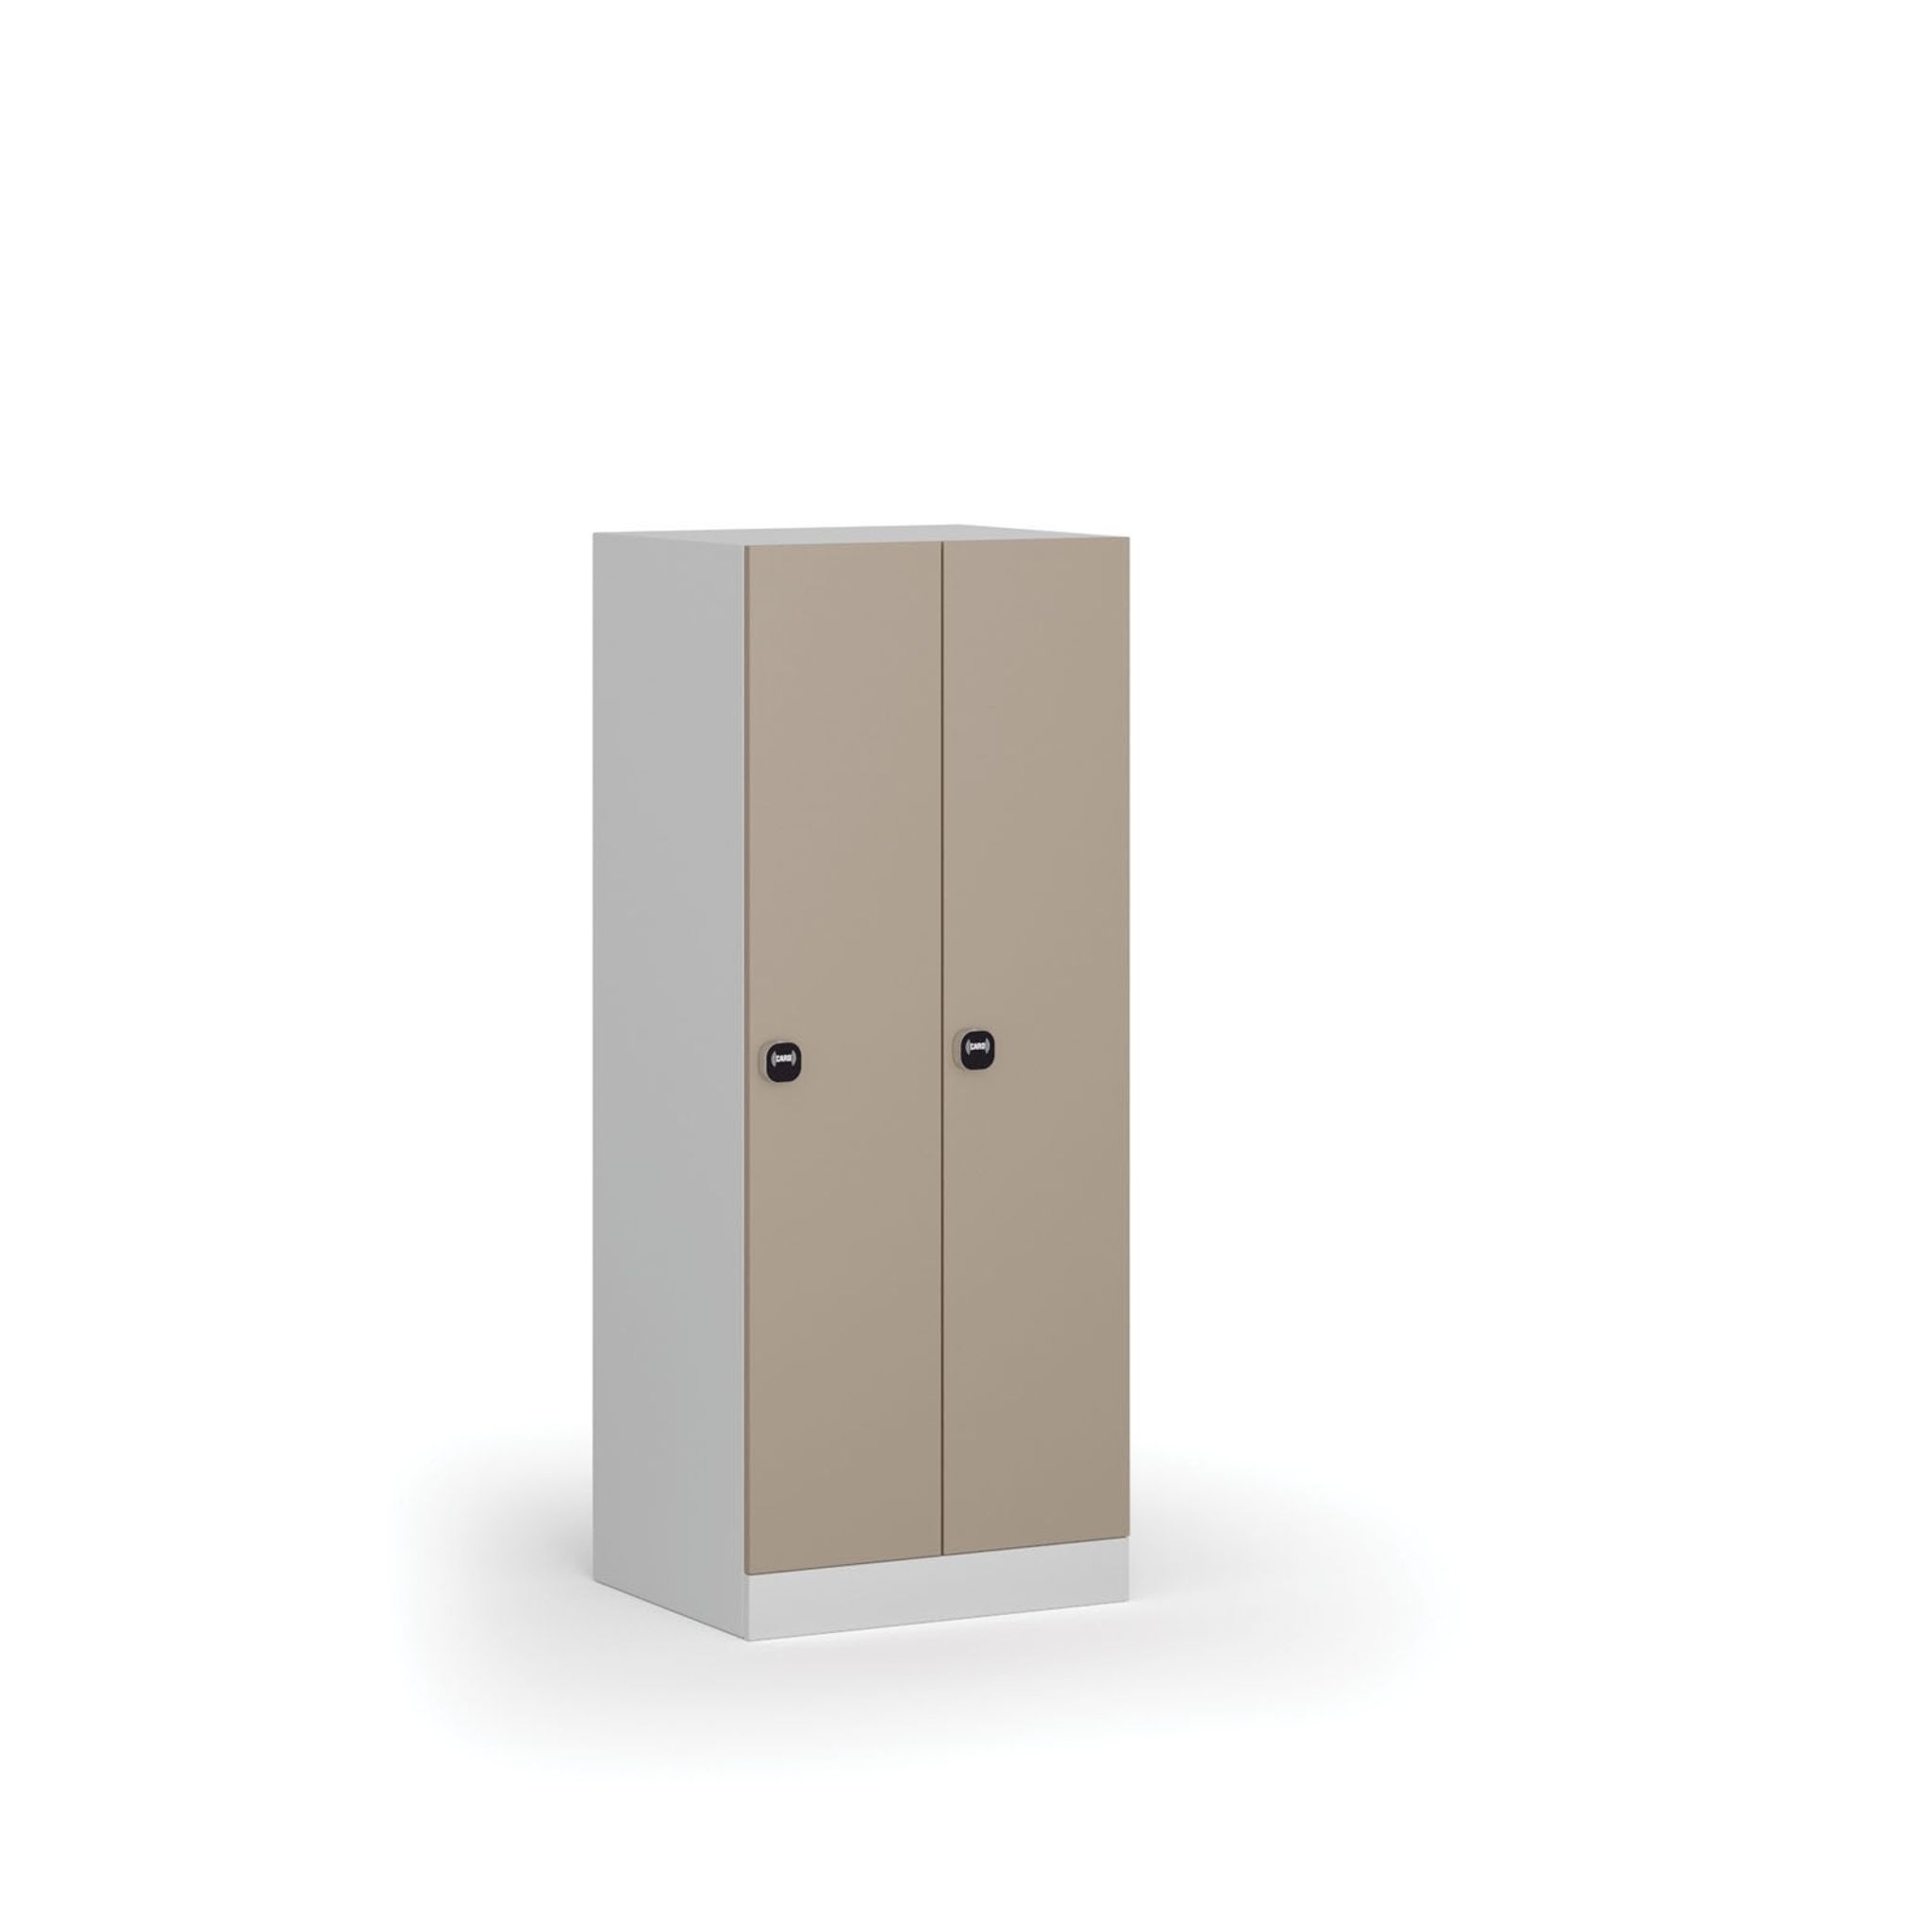 Šatní skříňka snížená, 2 oddíly, 1500 x 600 x 500 mm, zámek s čtečkou RFID karet, béžové dveře